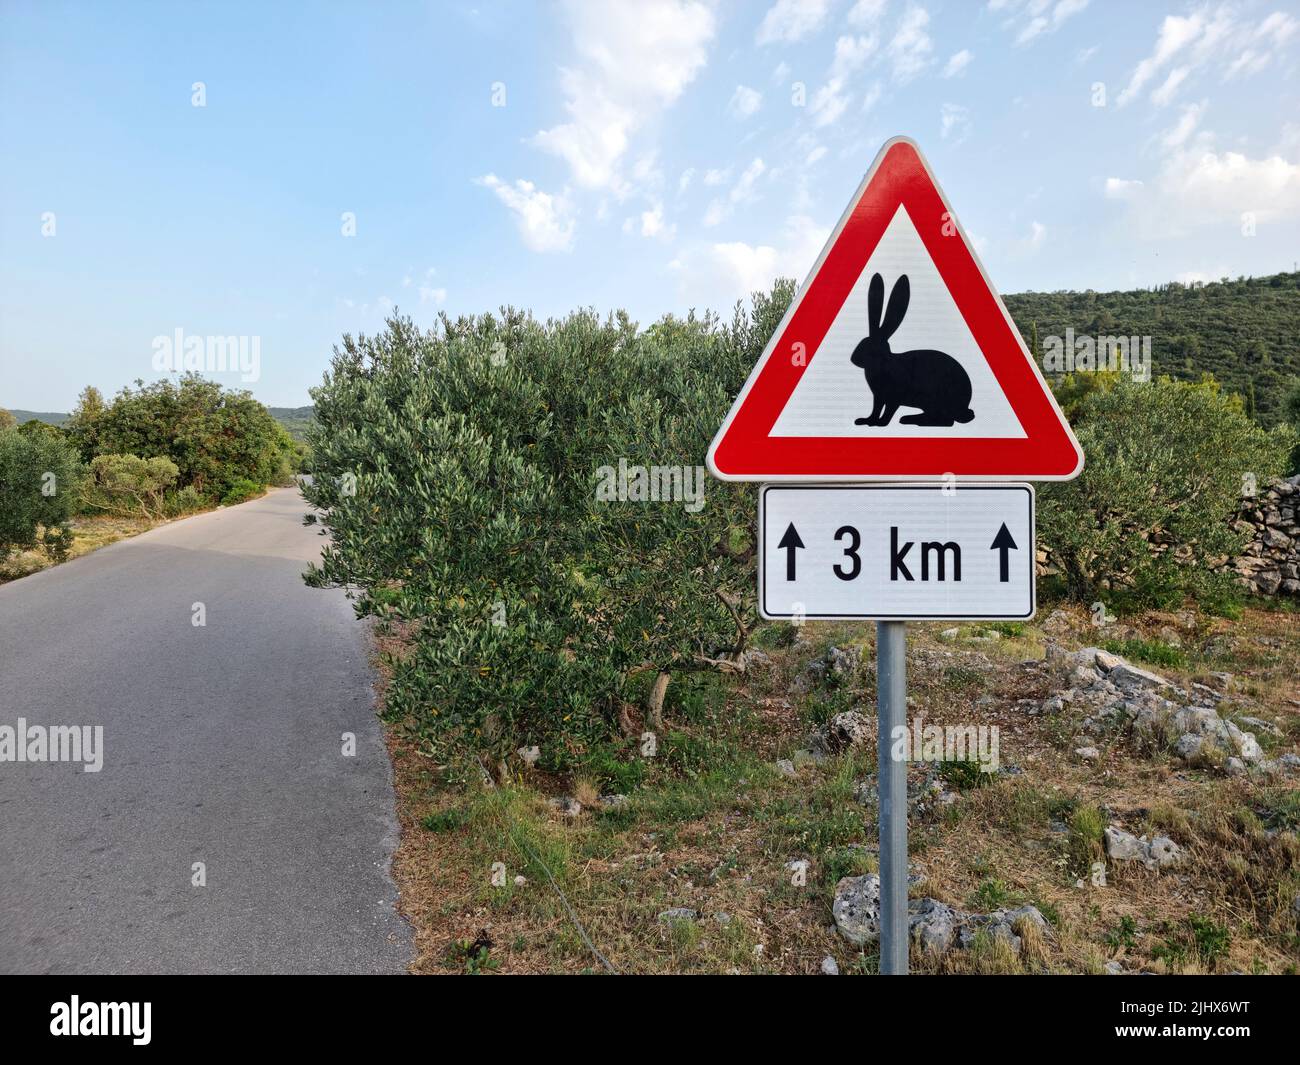 Conejos cruzando la señal de advertencia colocada a lo largo de una carretera en Croacia (Isla de Korčula, Dalmacia, Croacia). Foto de stock